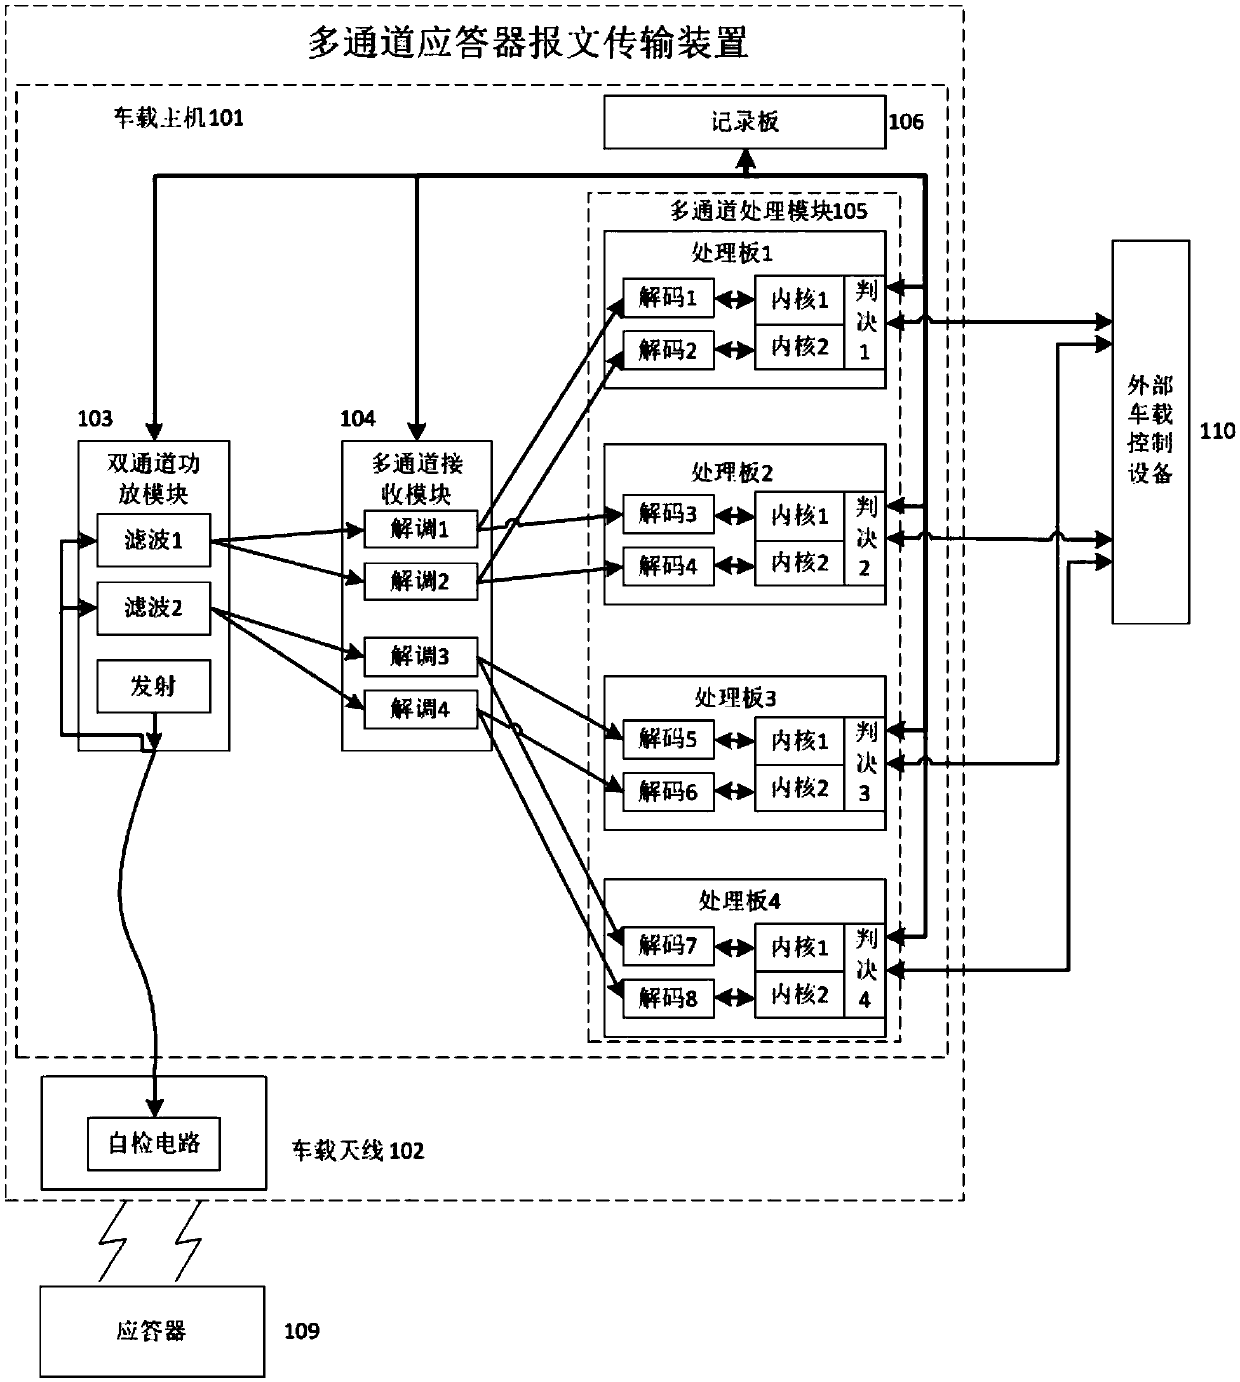 Multi-channel transponder message transmission device and multi-channel transponder message transmission method